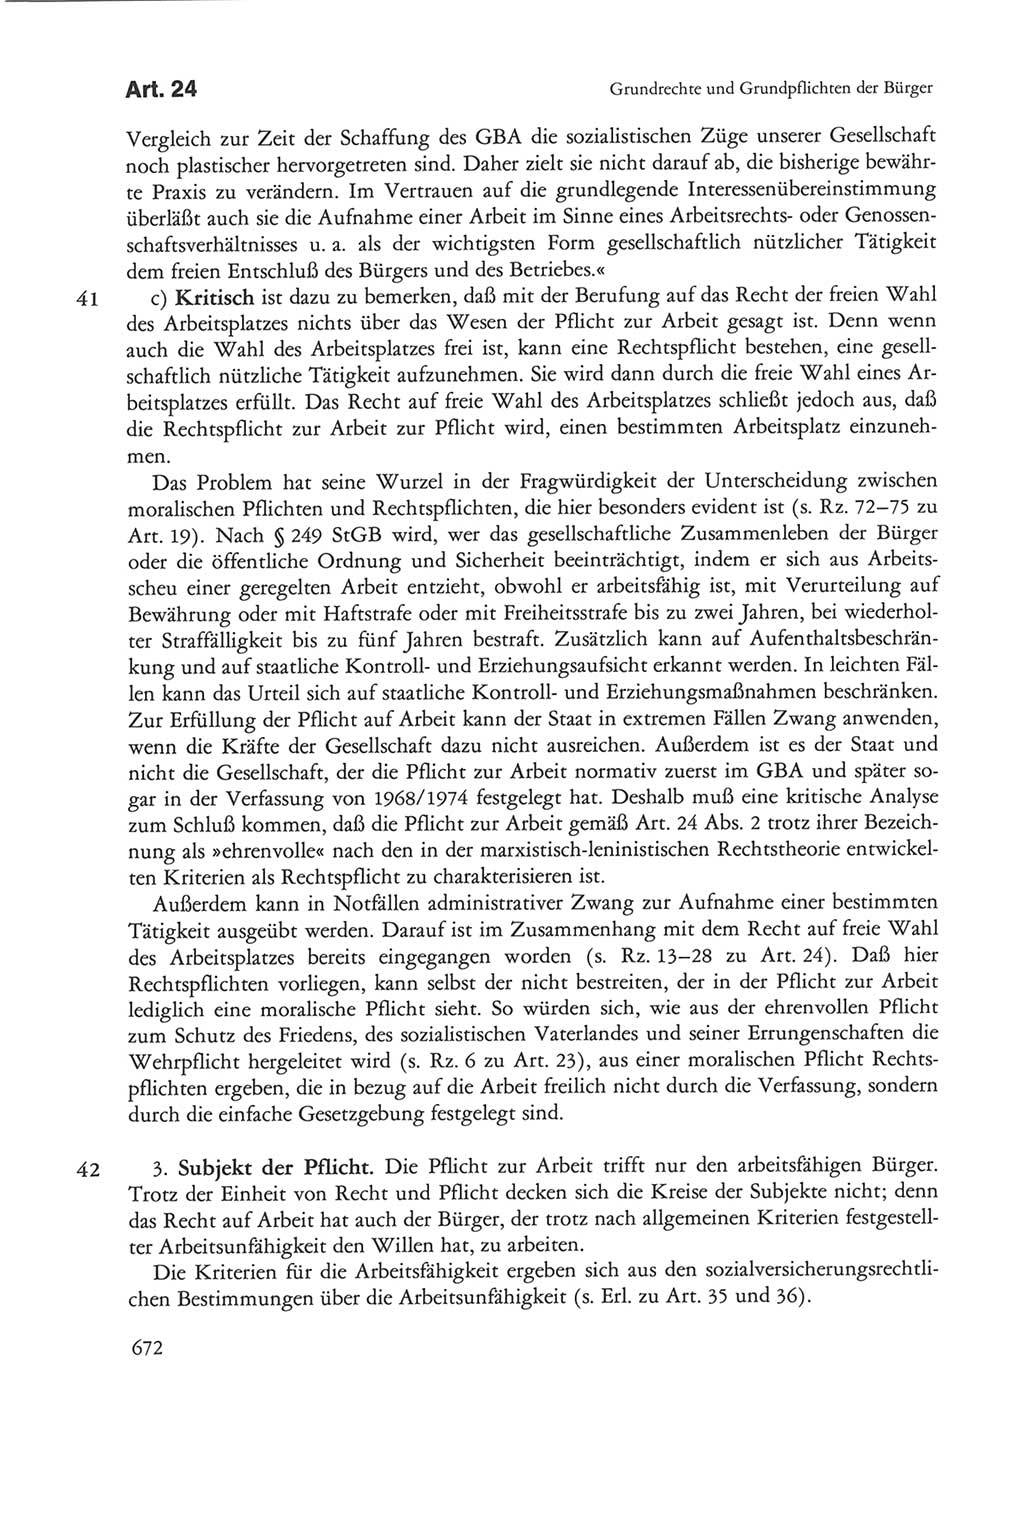 Die sozialistische Verfassung der Deutschen Demokratischen Republik (DDR), Kommentar 1982, Seite 672 (Soz. Verf. DDR Komm. 1982, S. 672)